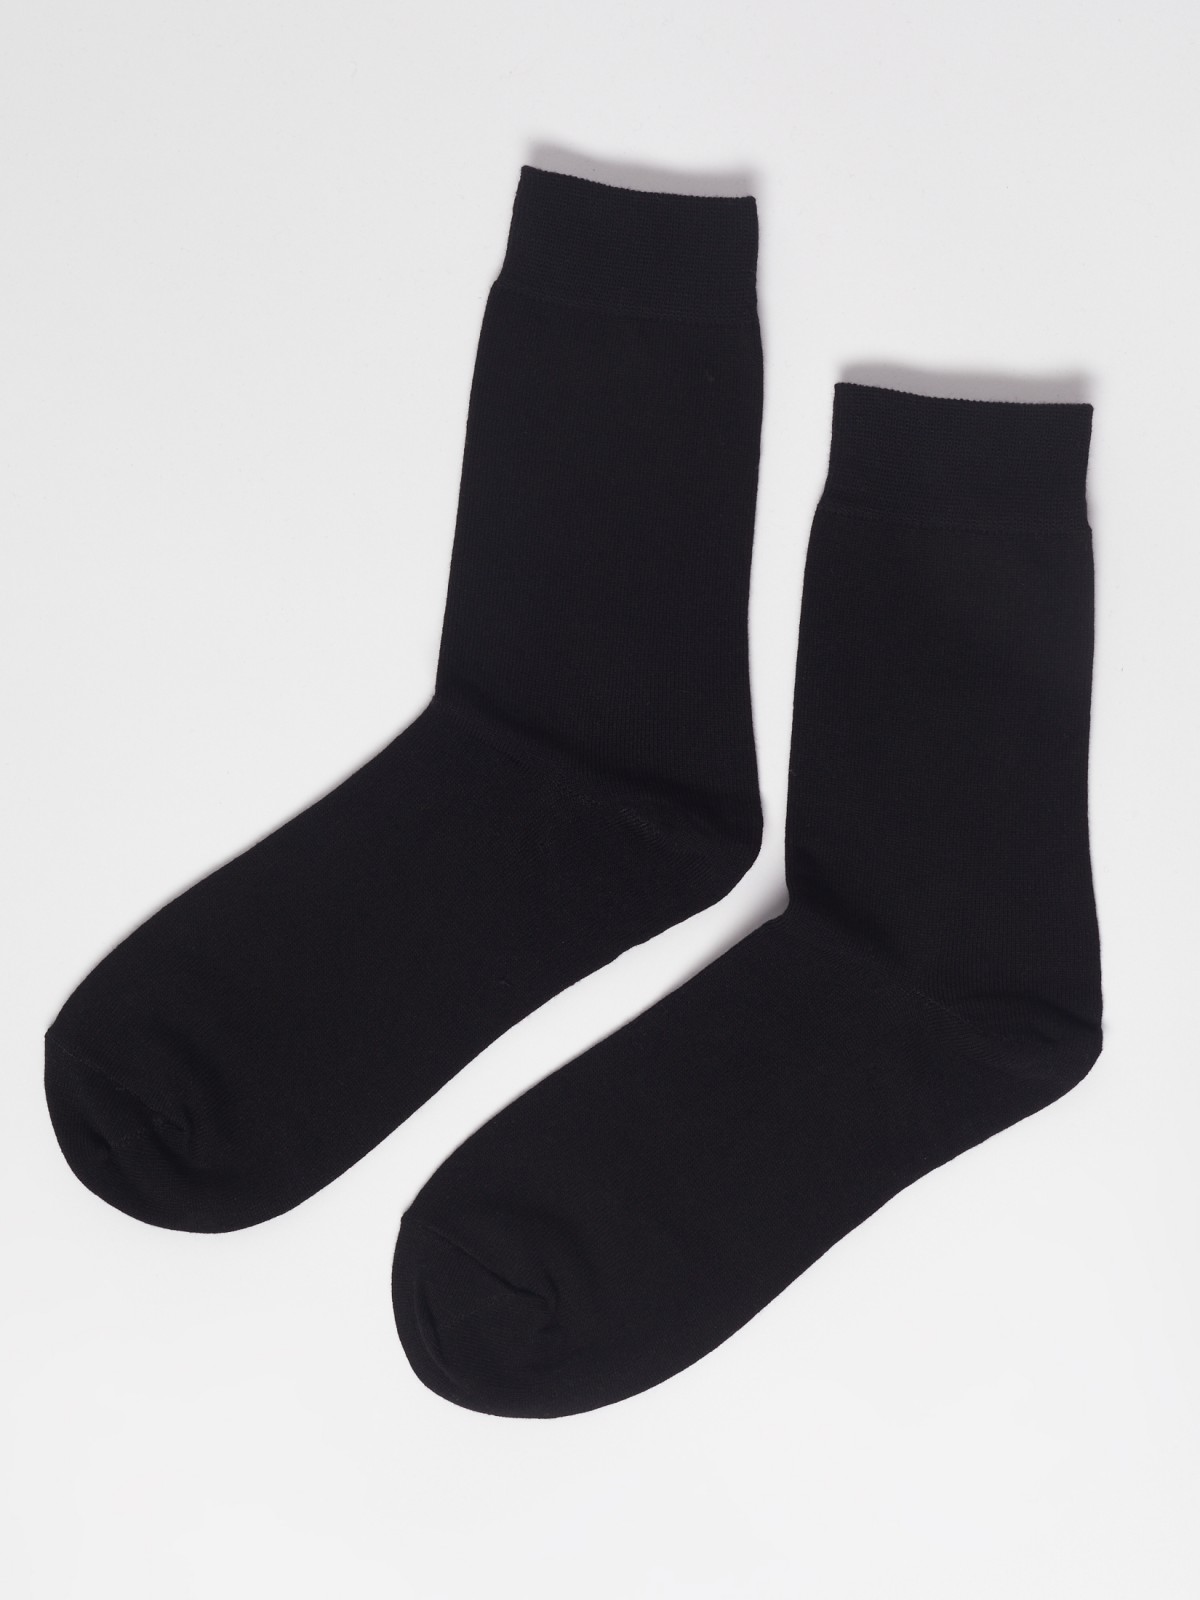 Набор высоких носков (3 пары в комплекте) zolla 01311995G015, цвет черный, размер 25-27 - фото 3